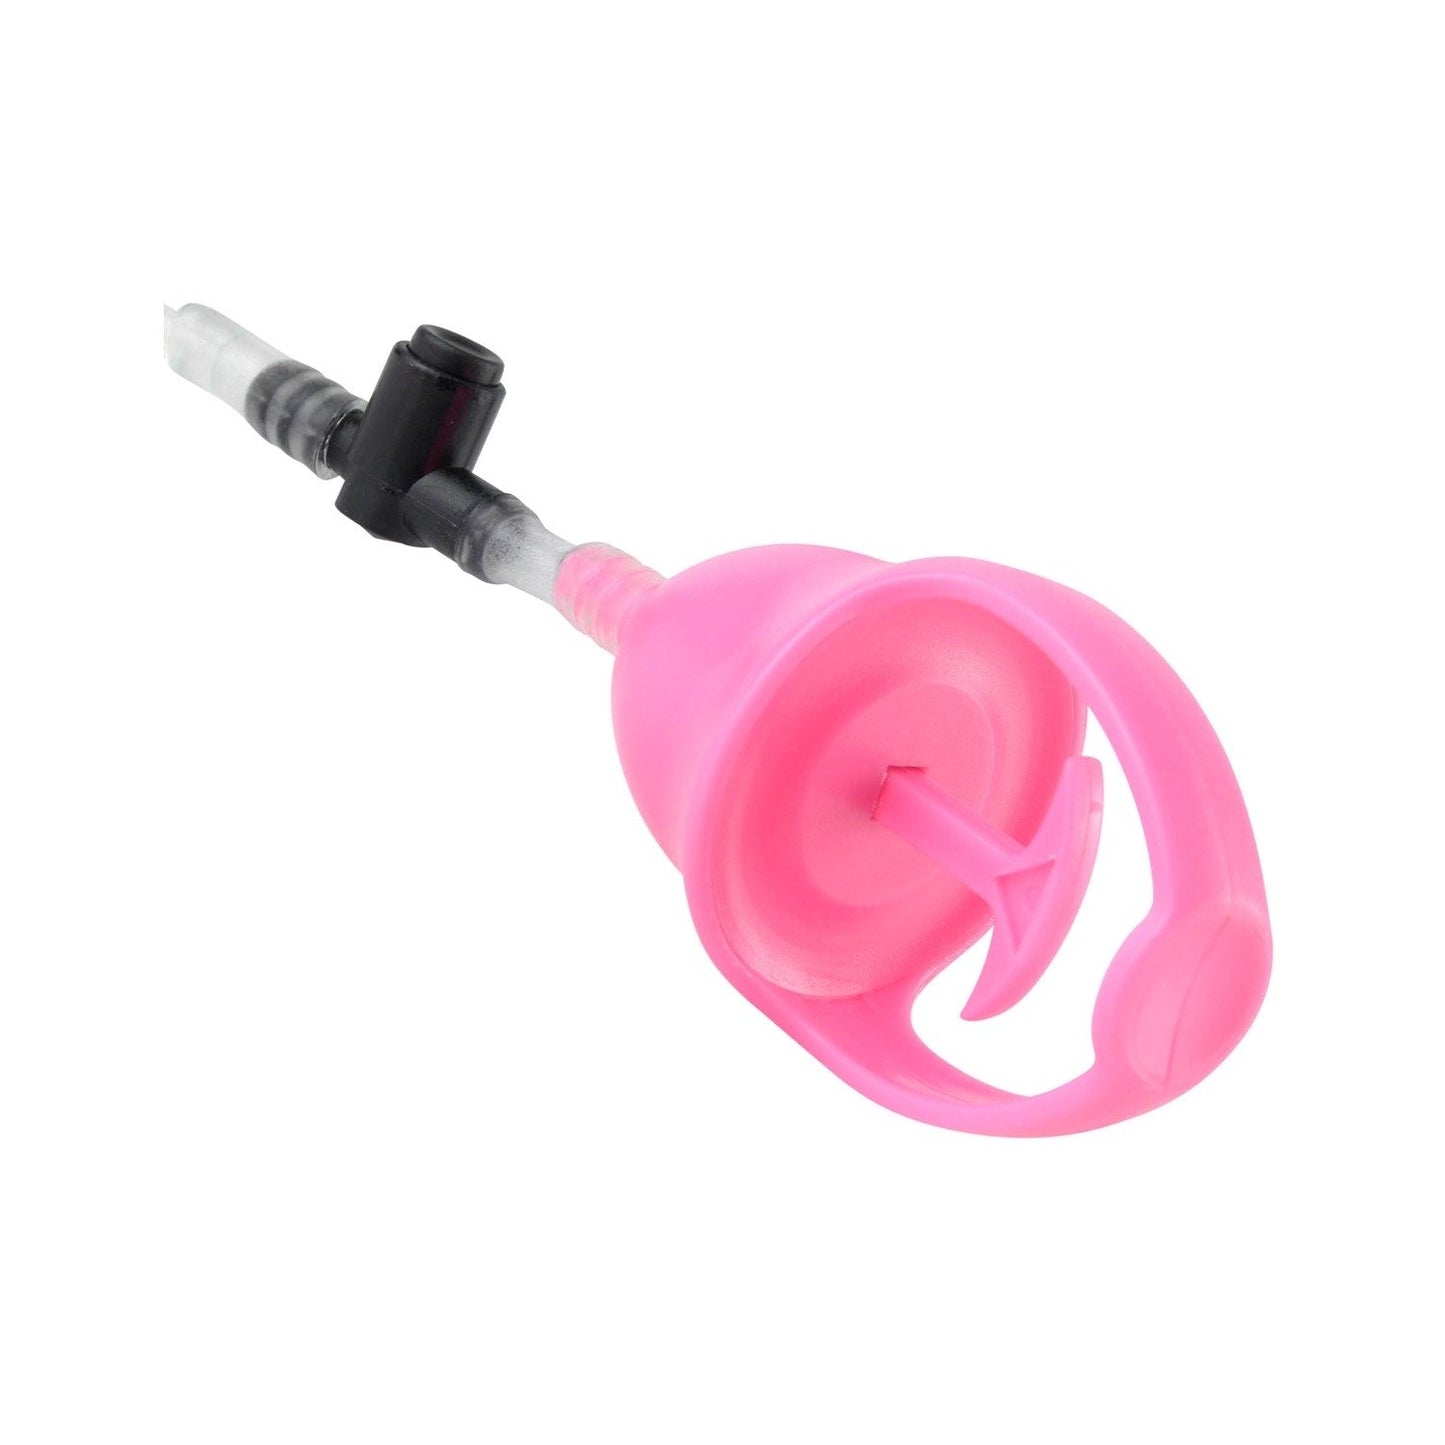 振动迷你阴户泵 - 粉色振动泵